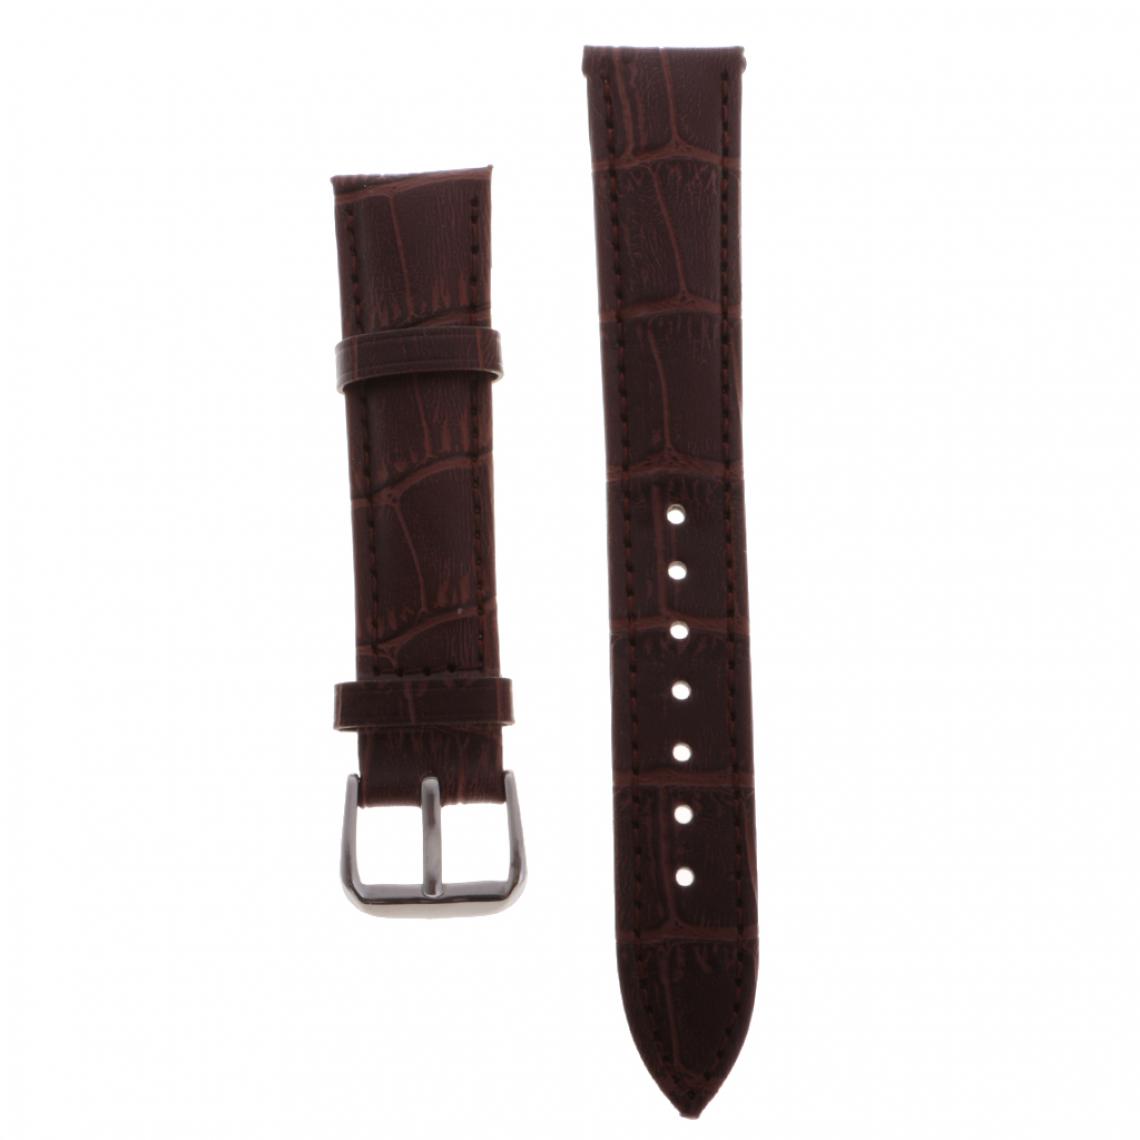 marque generique - Bracelet en cuir de haute qualité bracelet bracelet pour montres 16mm noir - Accessoires montres connectées